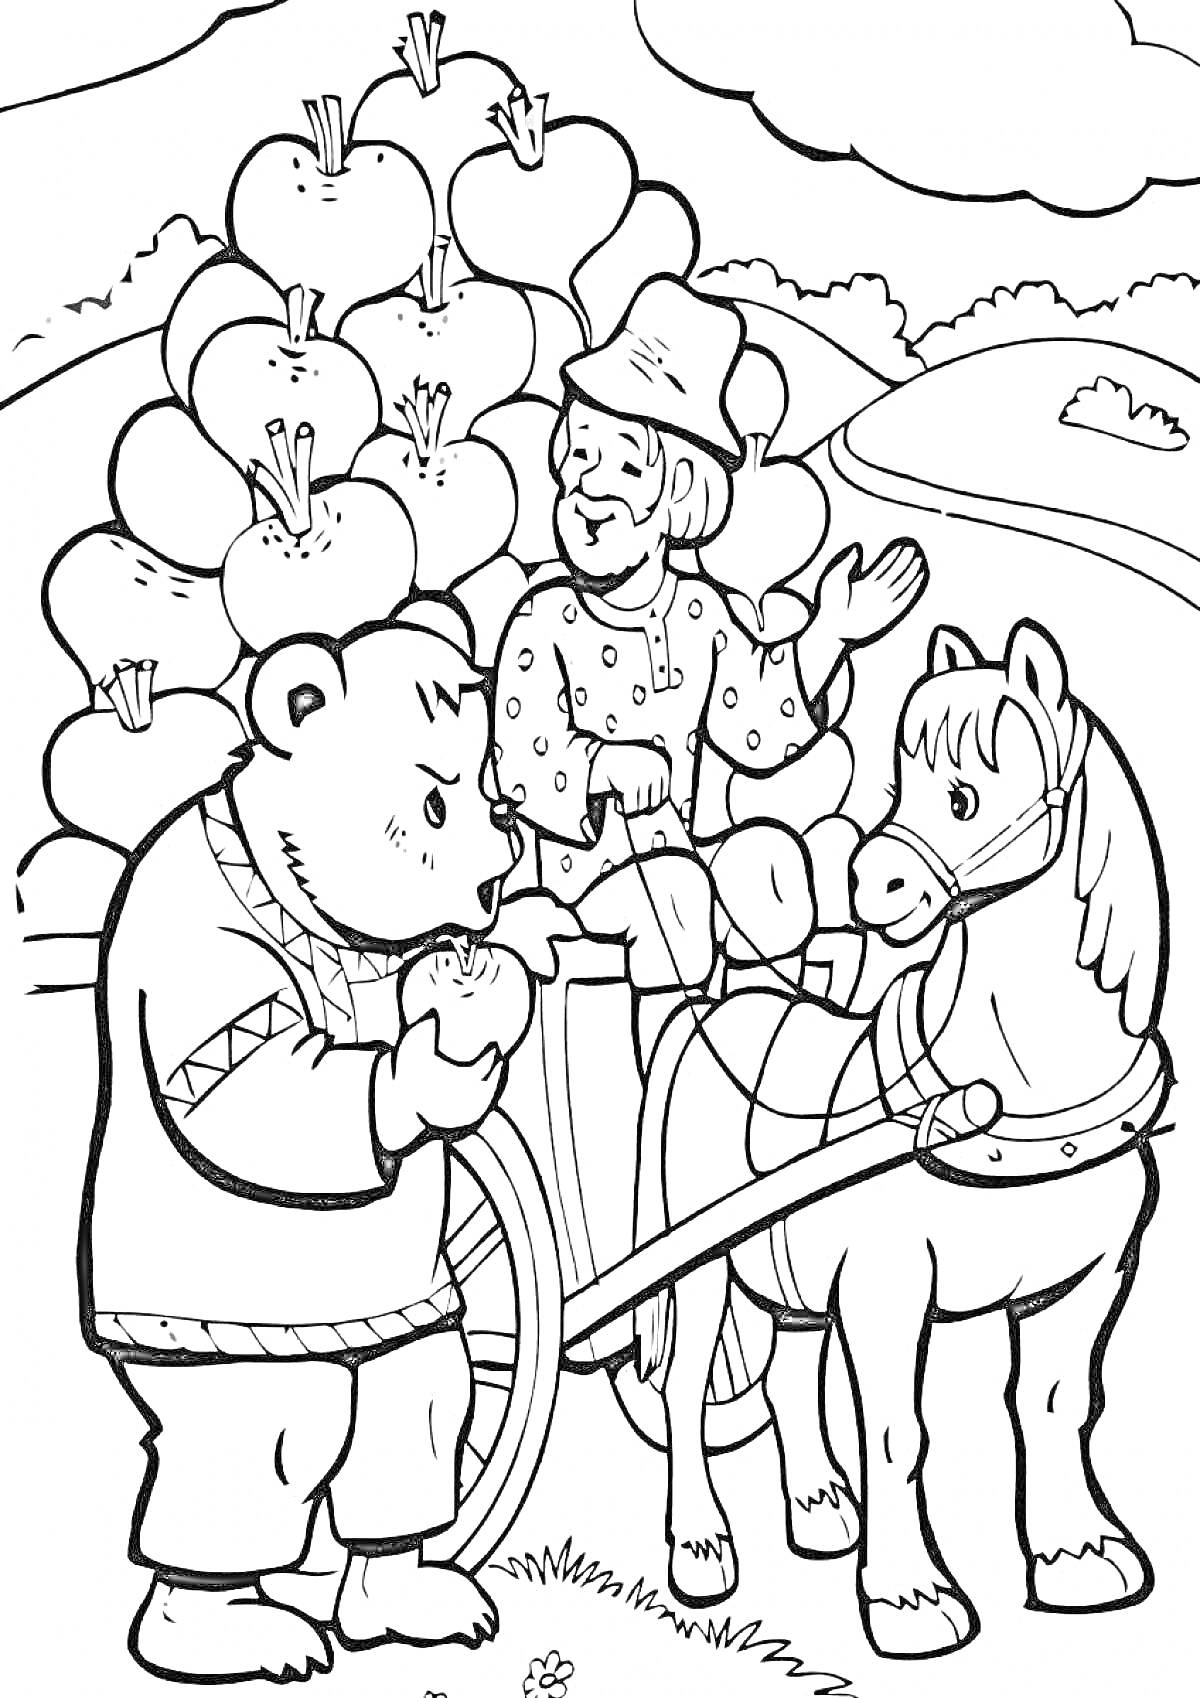 Раскраска Мужчина и медведь перед яблоней с яблоками и конем в упряжке